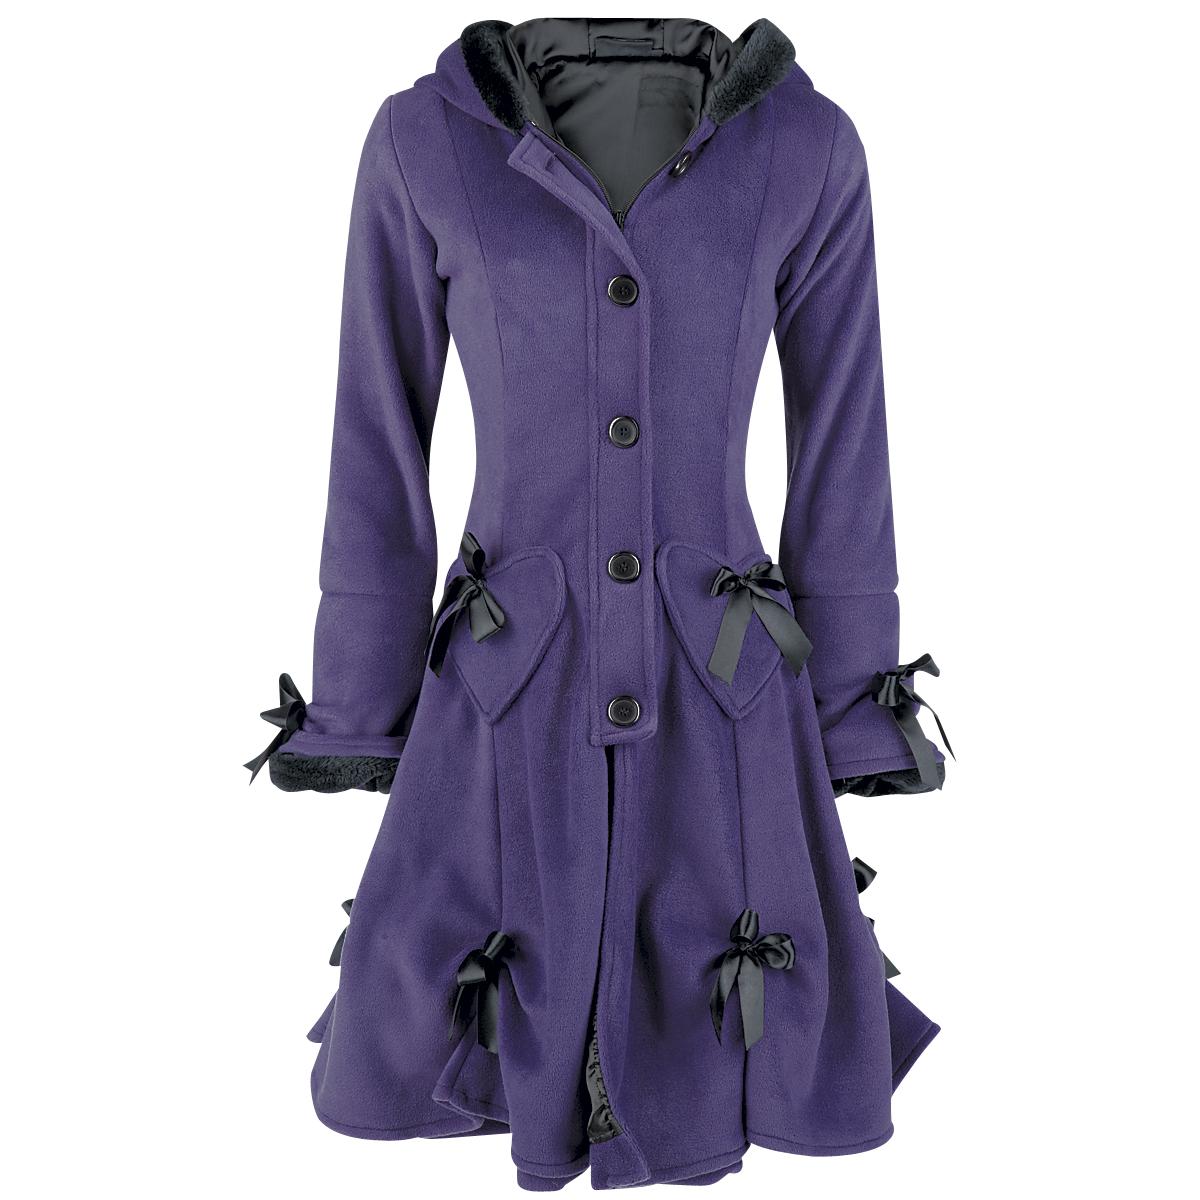 Stylish Purple Coat | Here Everythink Is Stylish